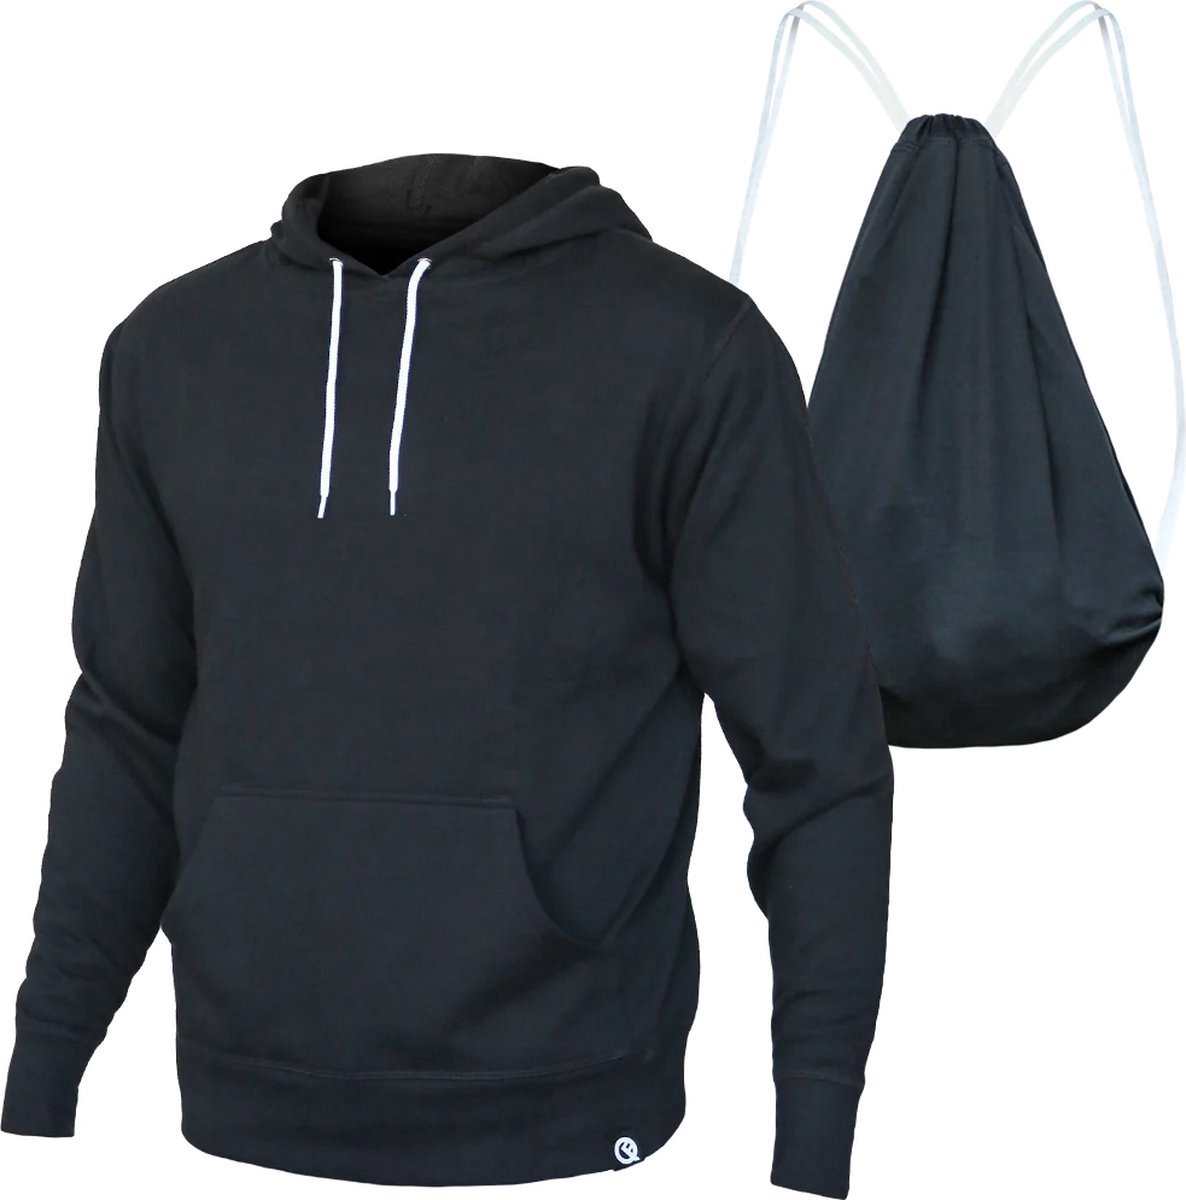 Originele Quikflip rugzak hoodie maat XL - hoodie en rugzak ineen - gezien op sharttank USA - Exclusief verkrijgbaar bij Rustaagh.nl